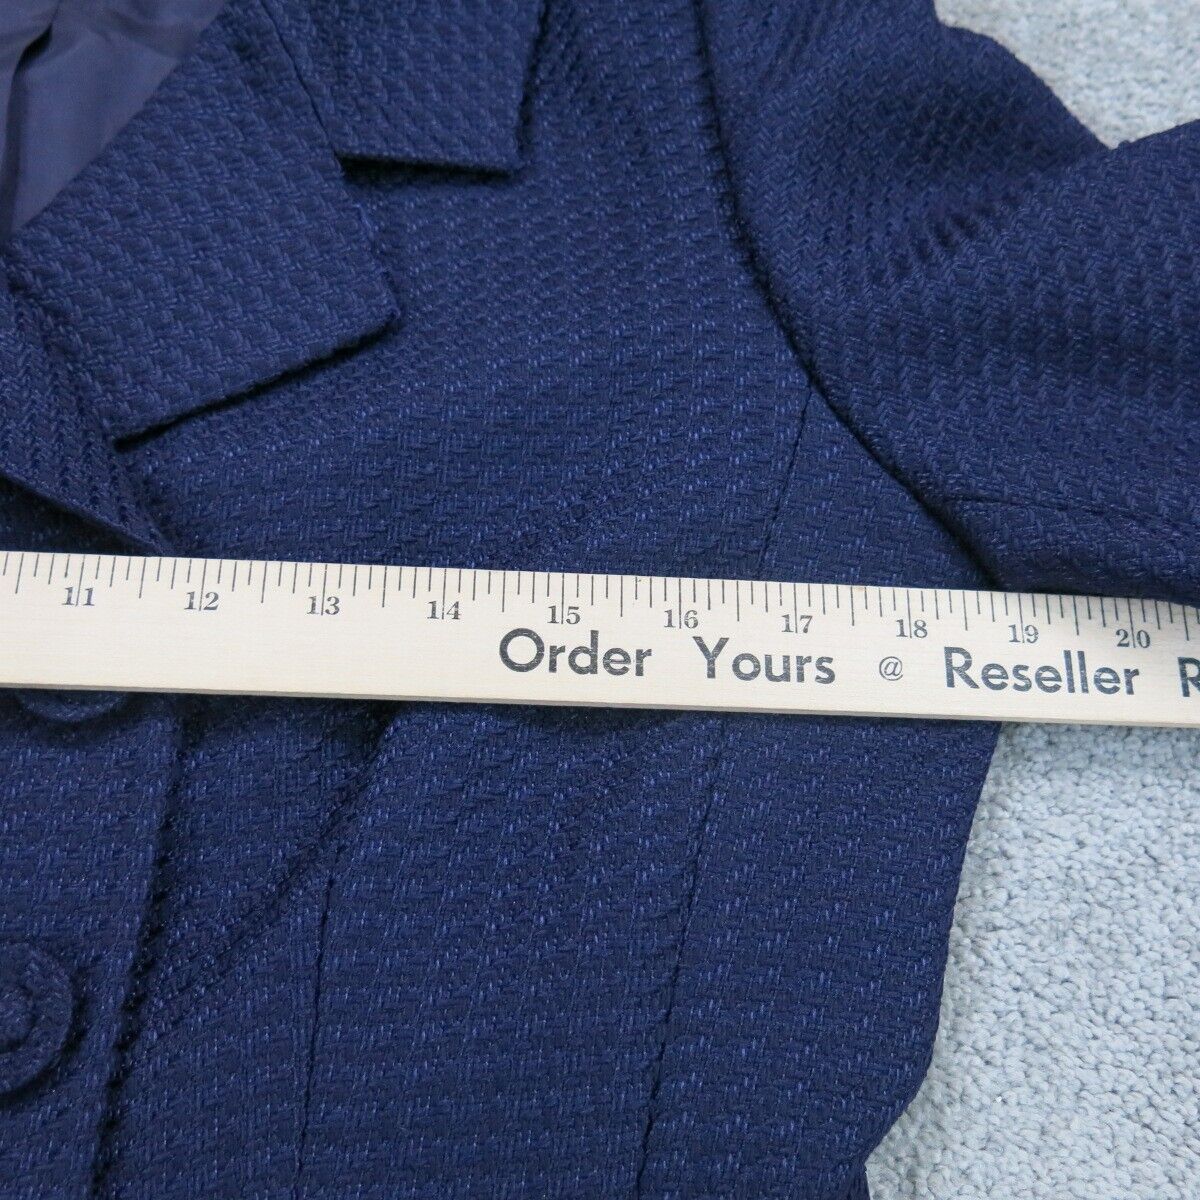 Tahari Womens Blazer Coat Double Breasted Long Sleeve Pockets Blue Size 10